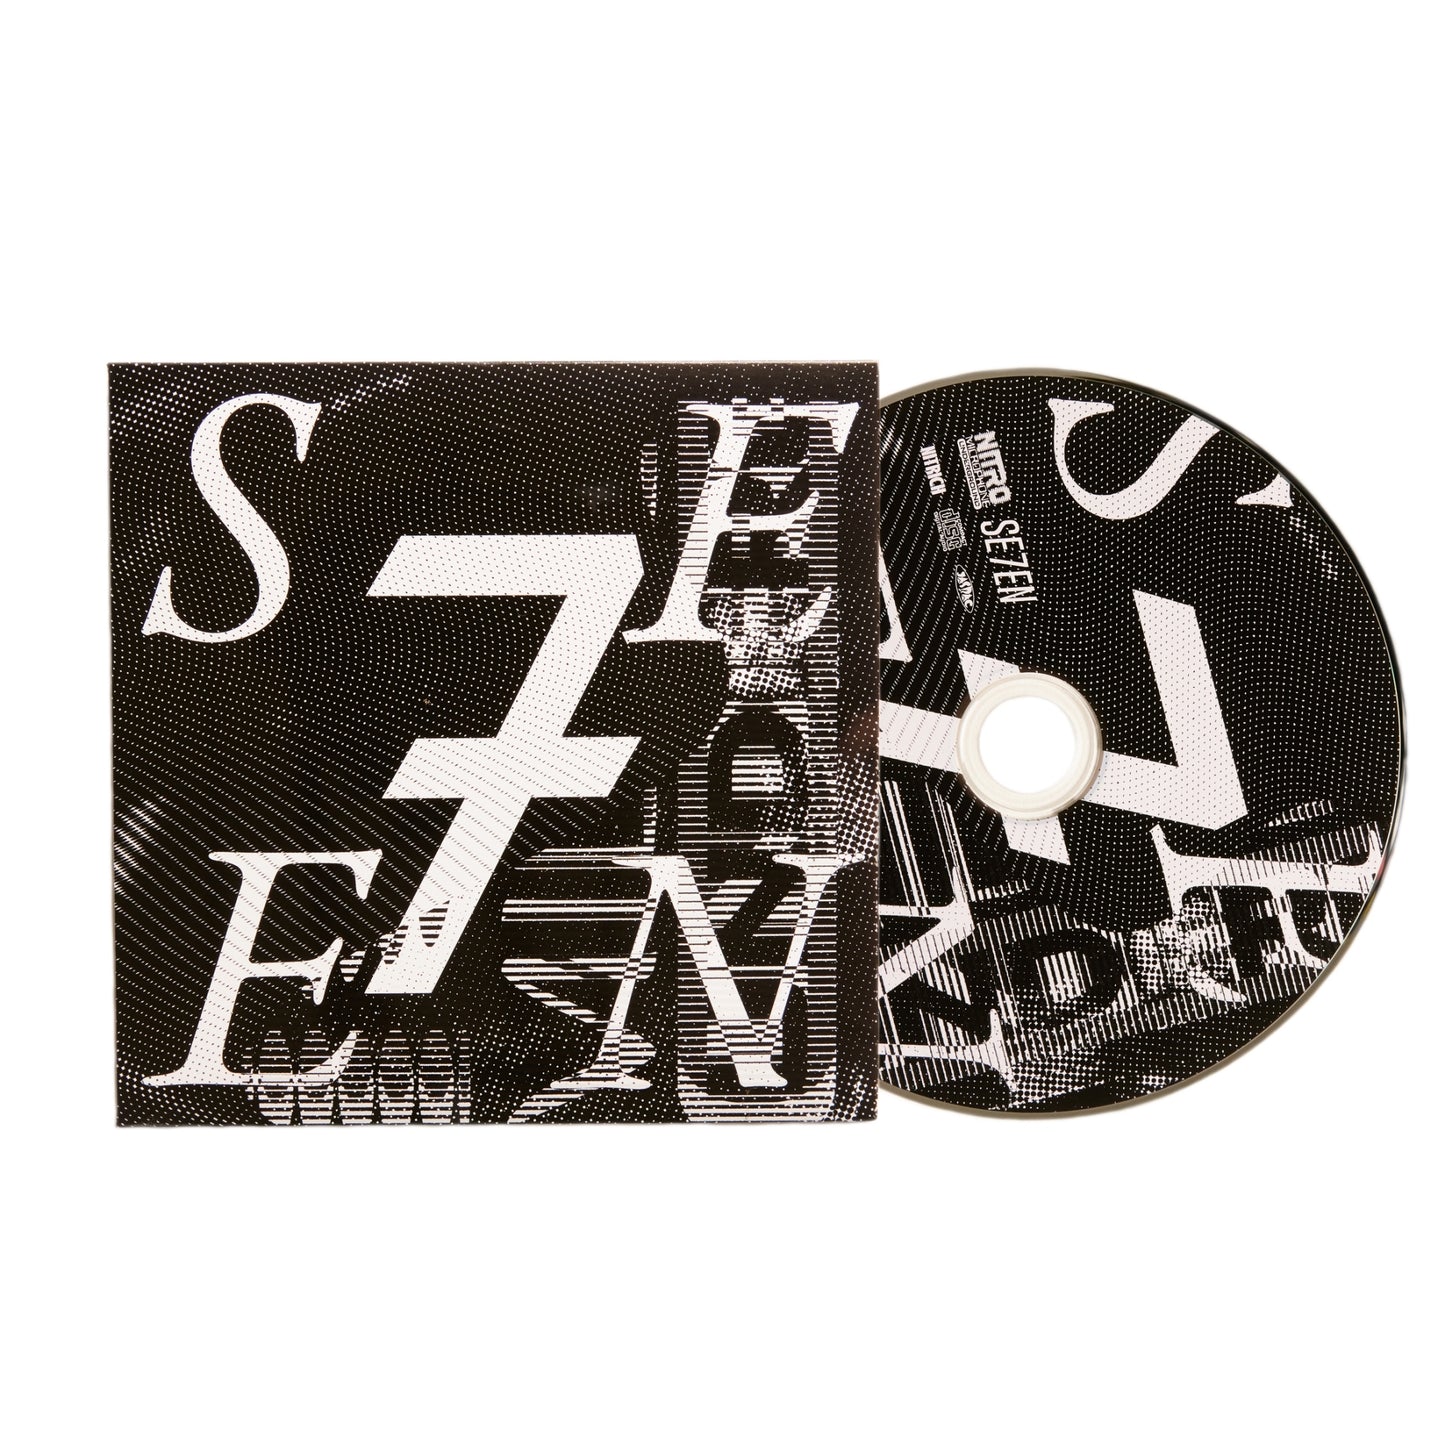 KOSUKE KAWAMURA × NITRO TEE with Album CD "SE7EN" / BLACK